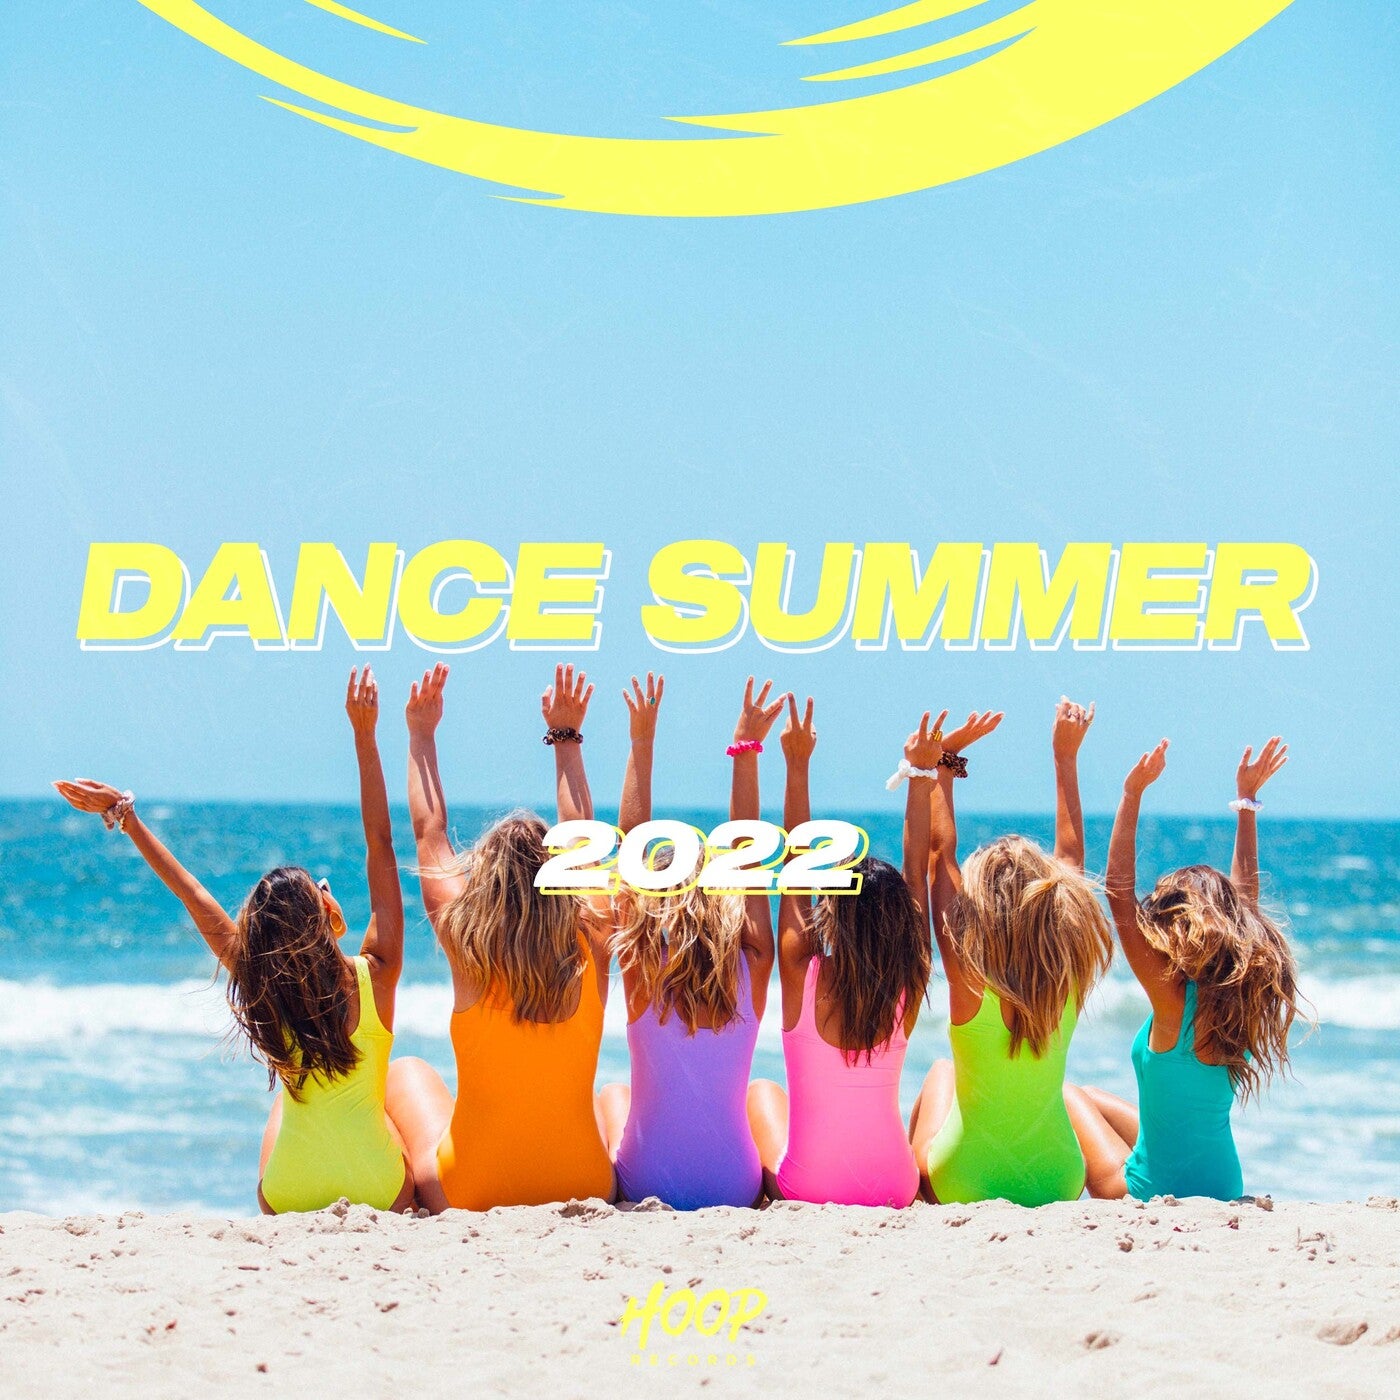 Доски Summer Dance. Хит лета 2022 фото надписи. Summer dance remix